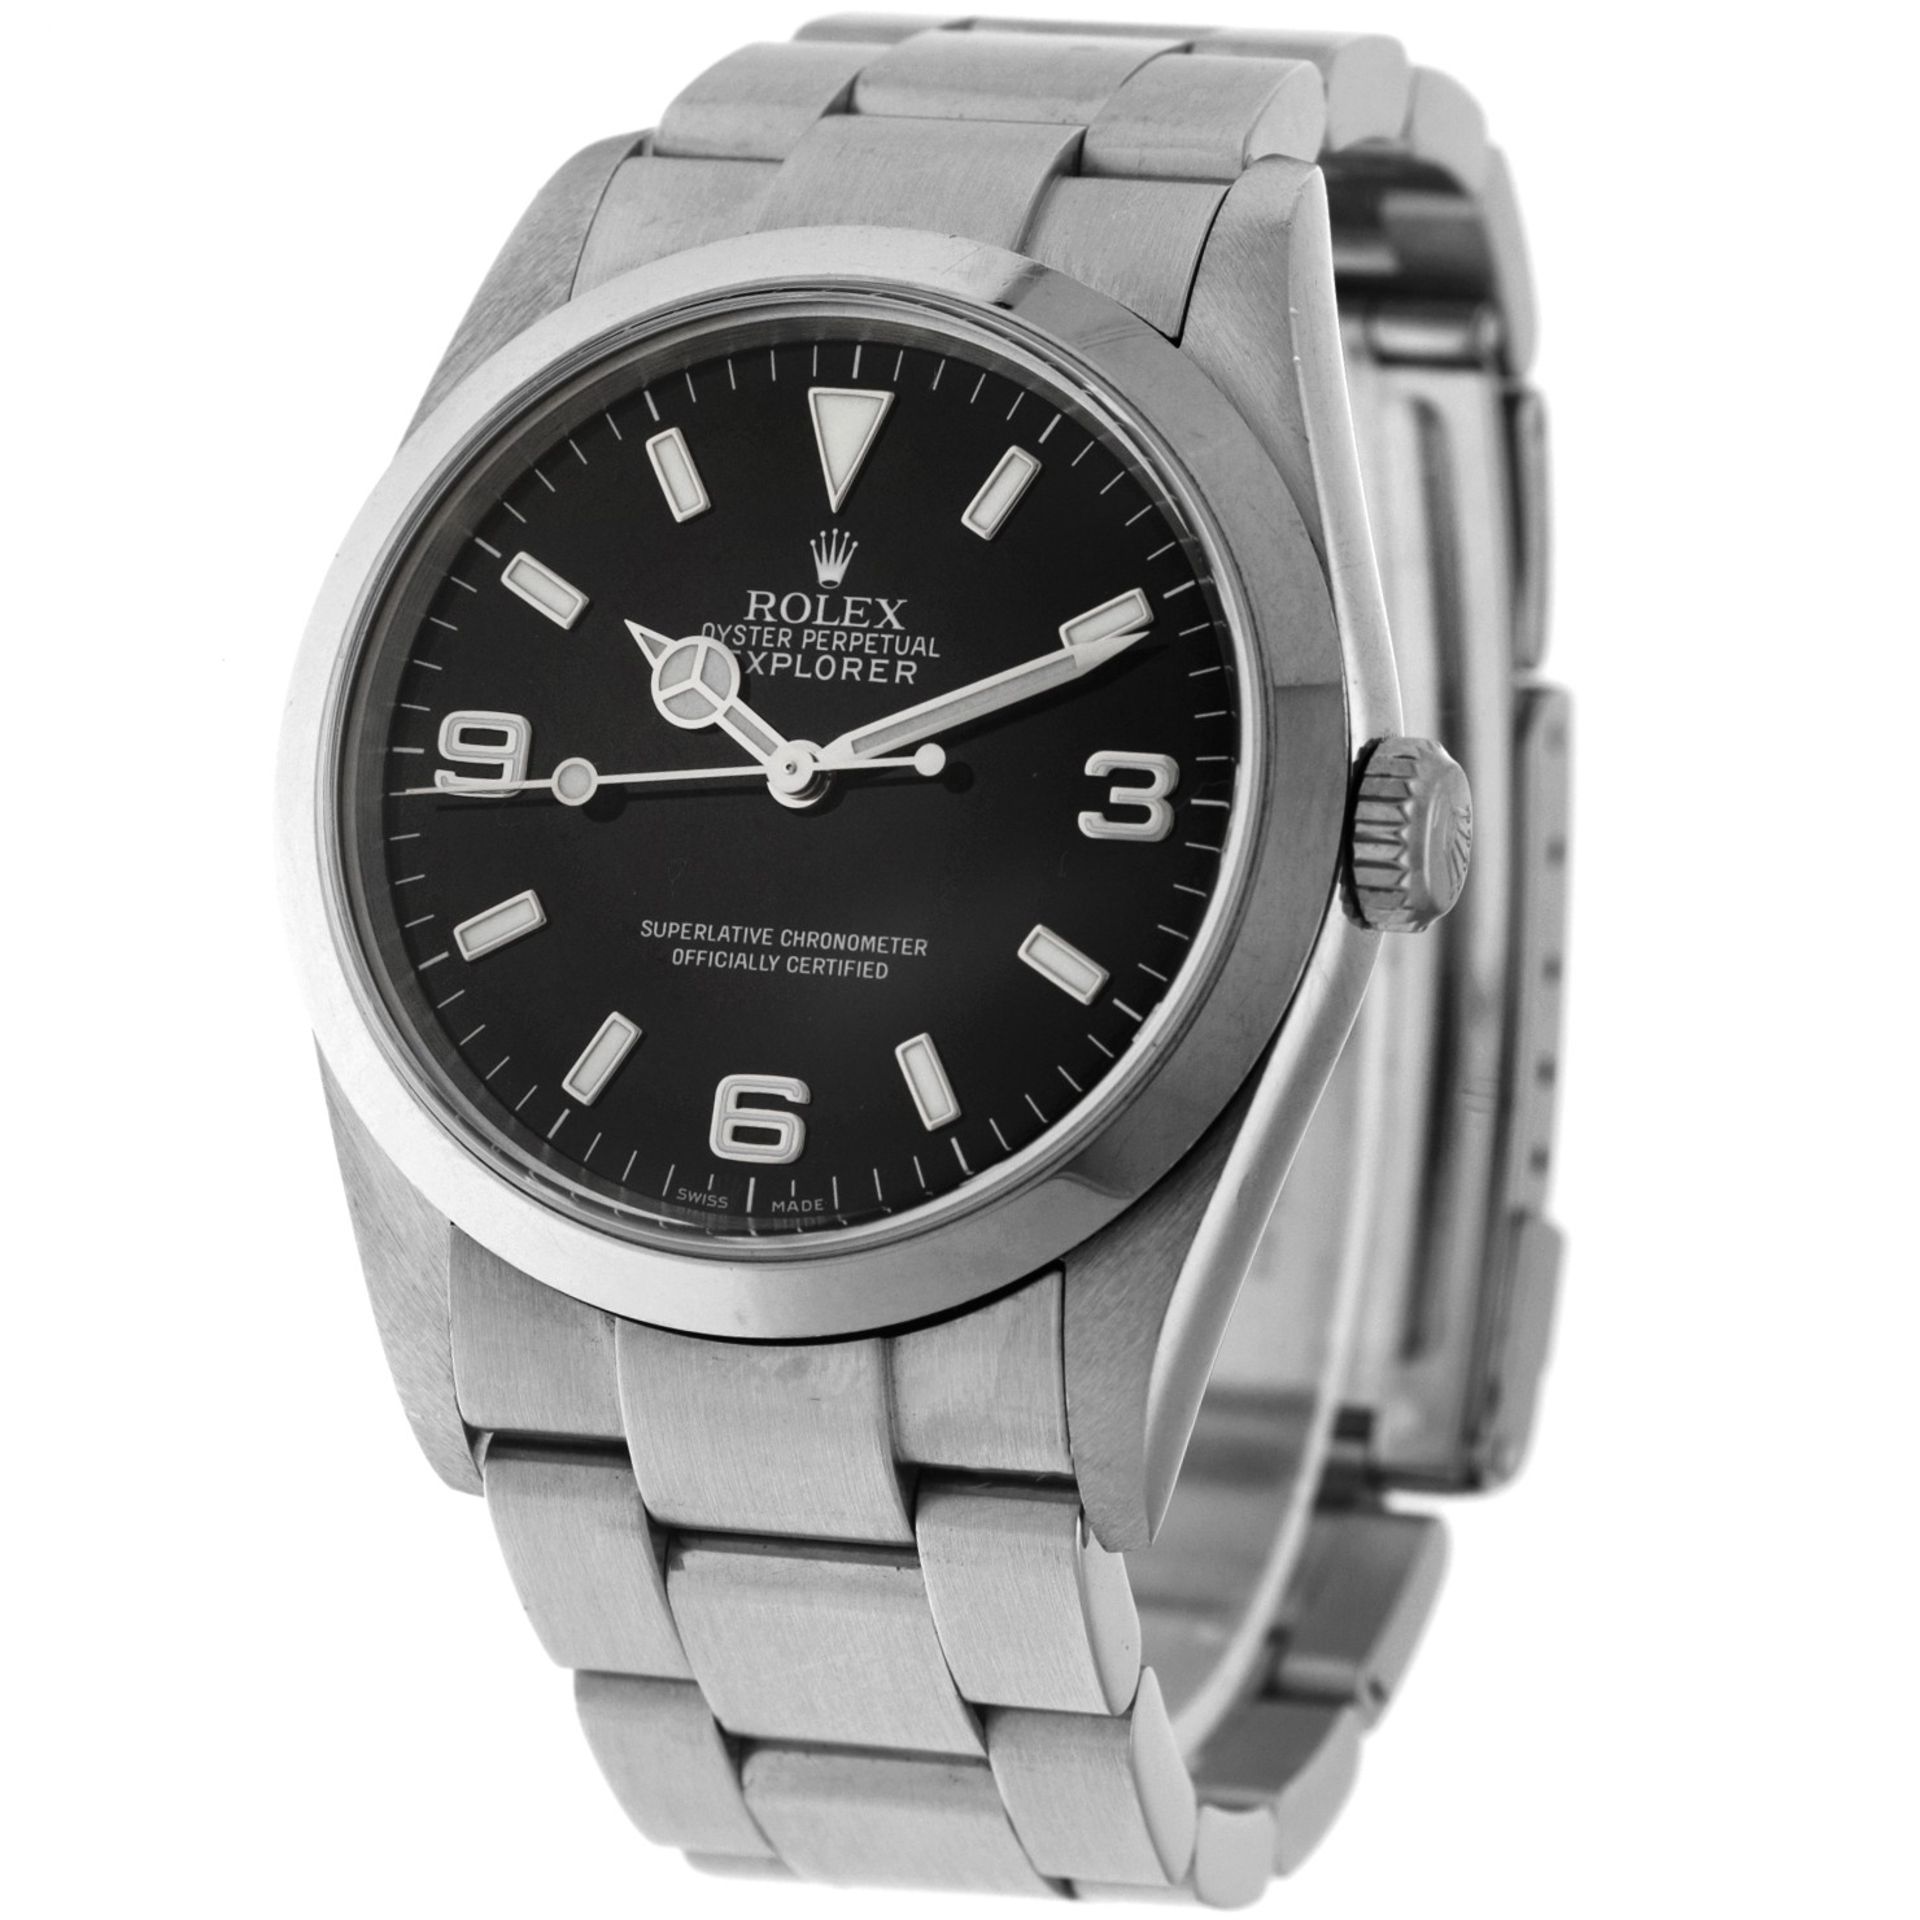 No Reserve - Rolex Explorer 114270 - Men's watch - 2006. - Image 2 of 6